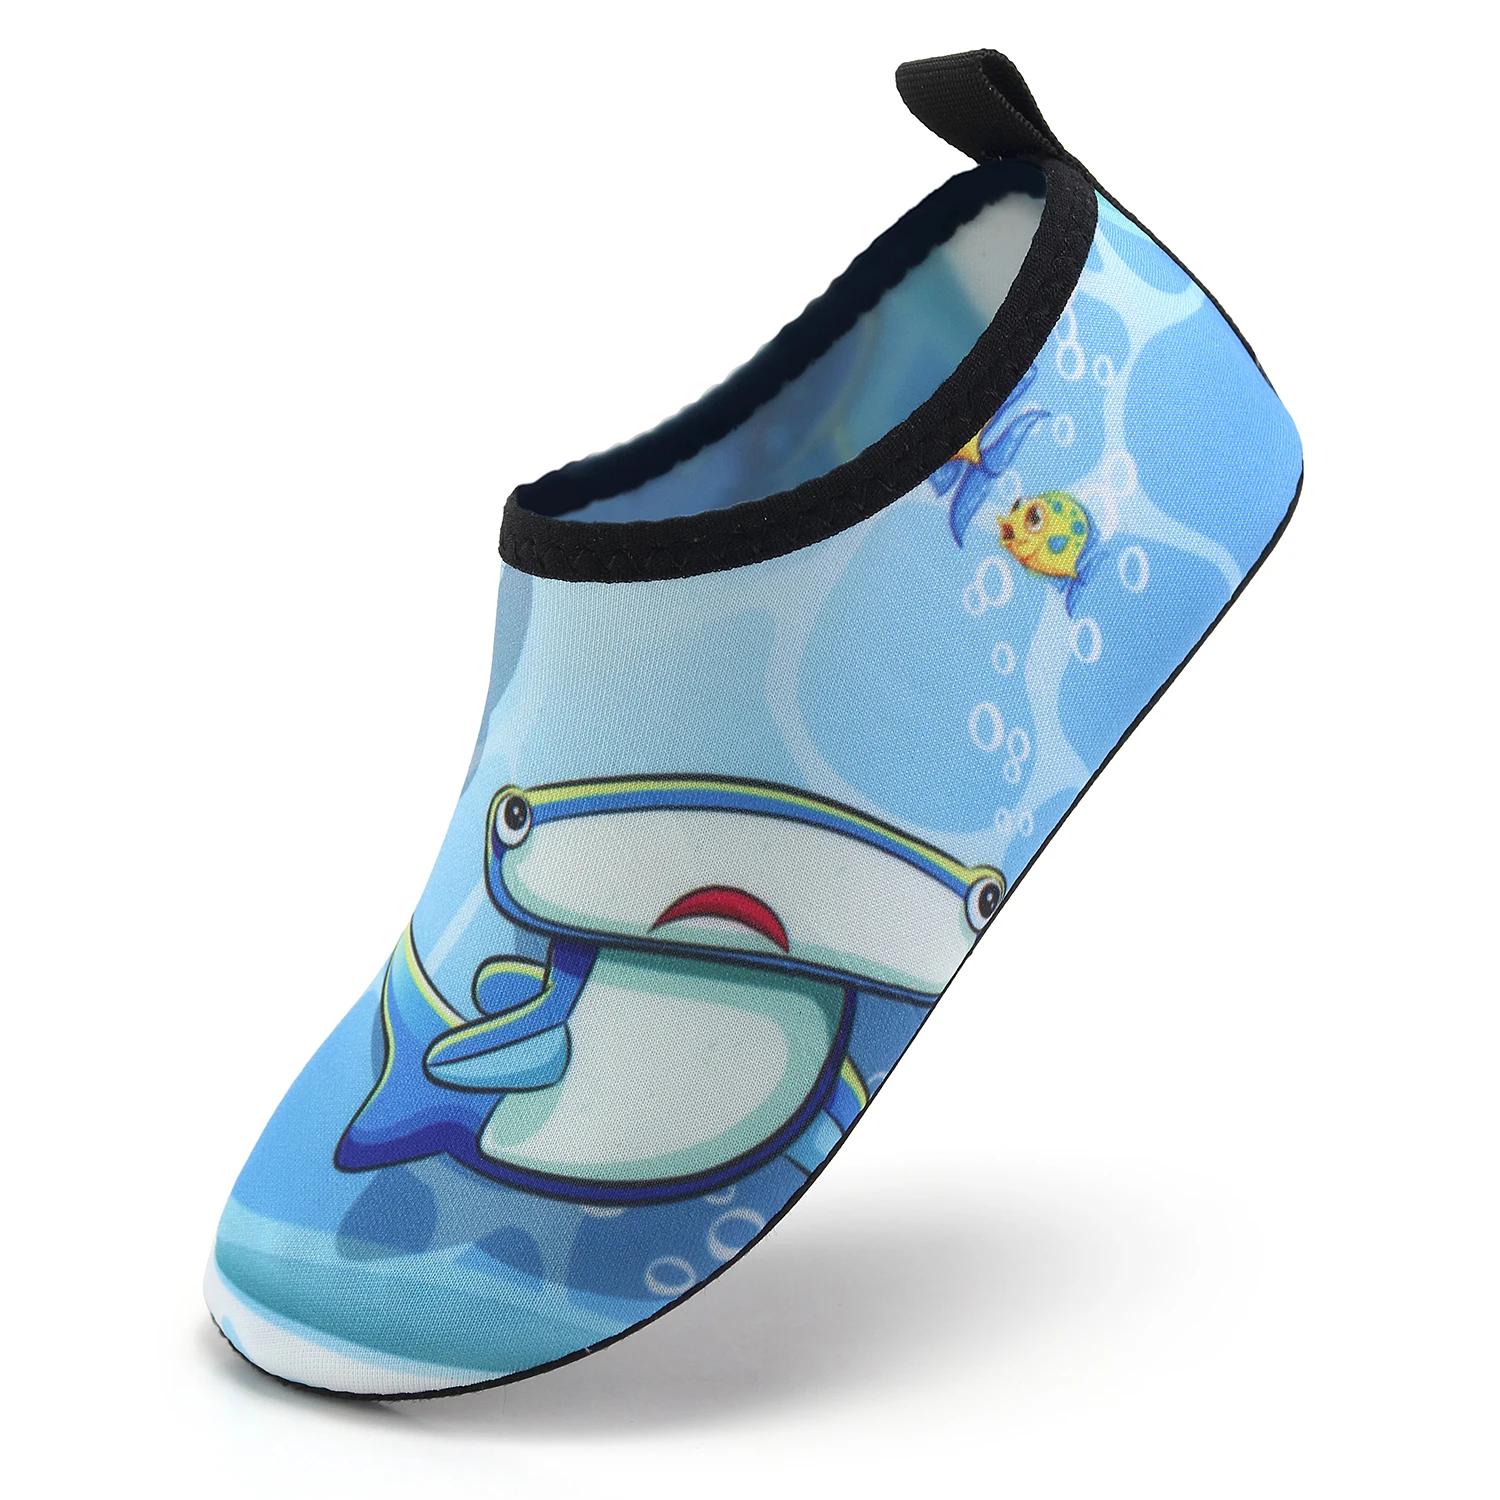 Sıcak Satış Çocuk Yalınayak Hızlı Kuru Dalış yürüyüş botları Plaj Yüzme Ayakkabı Yoga Çorap Yumuşak Alt Ayak Koruma Ayakkabı